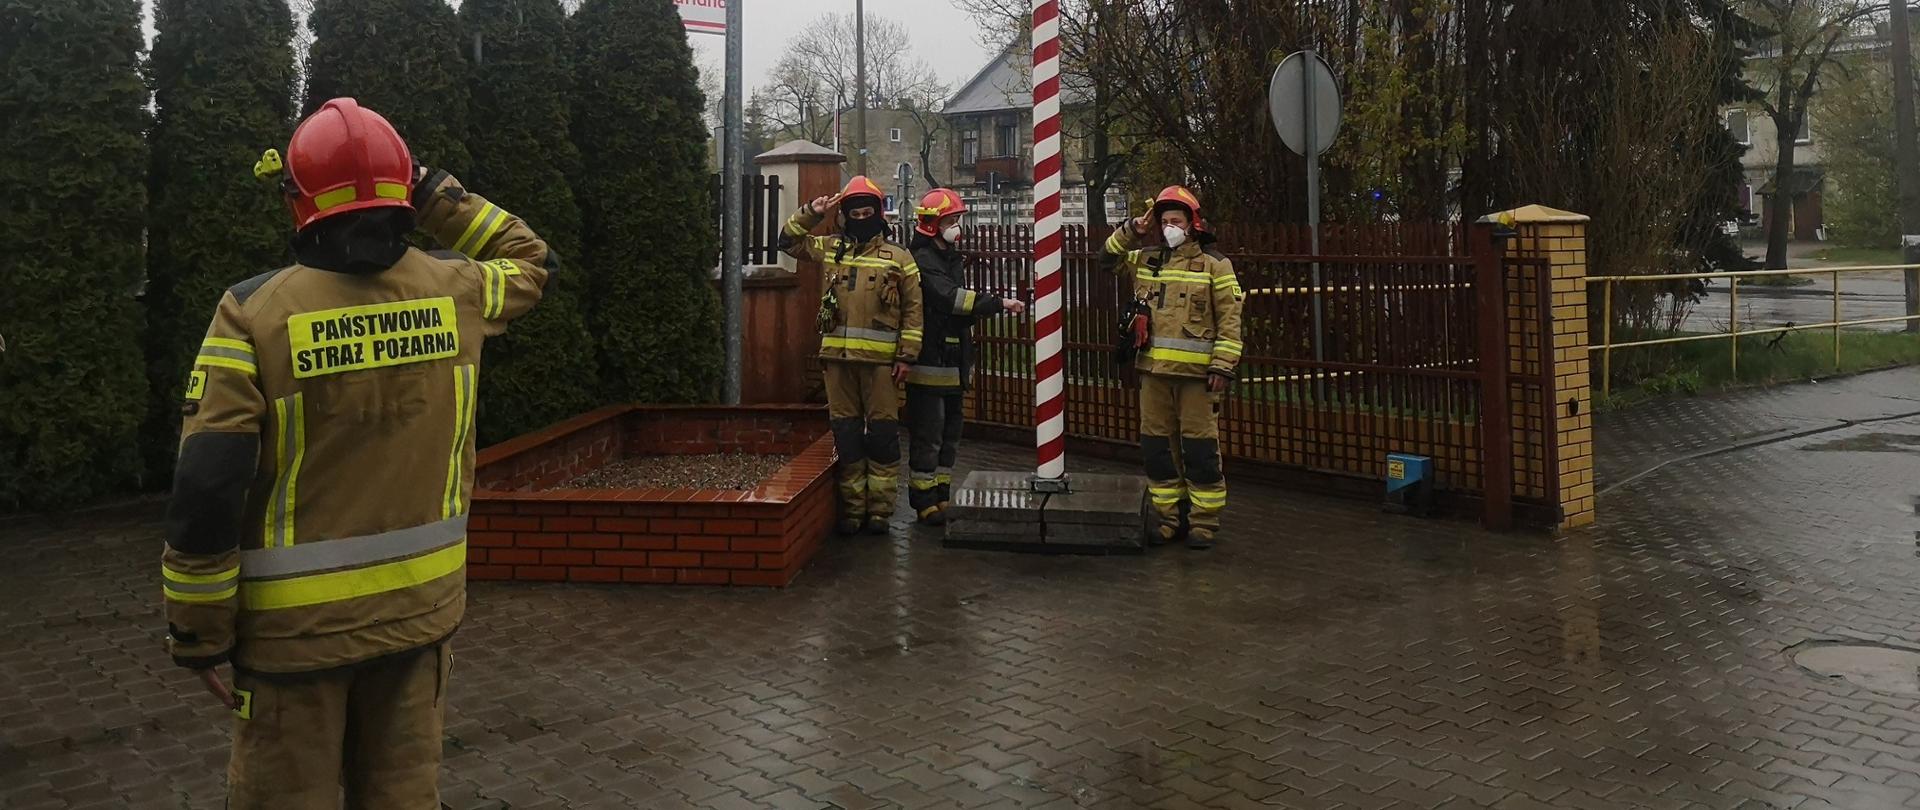 Na drugim planie widoczni strażacy dokonujący uroczystego podniesienia flagi Rzeczypospolitej Polskiej. Na pierwszym planie, po lewej stronie strażak salutujący, zwrócony frontem do masztu.